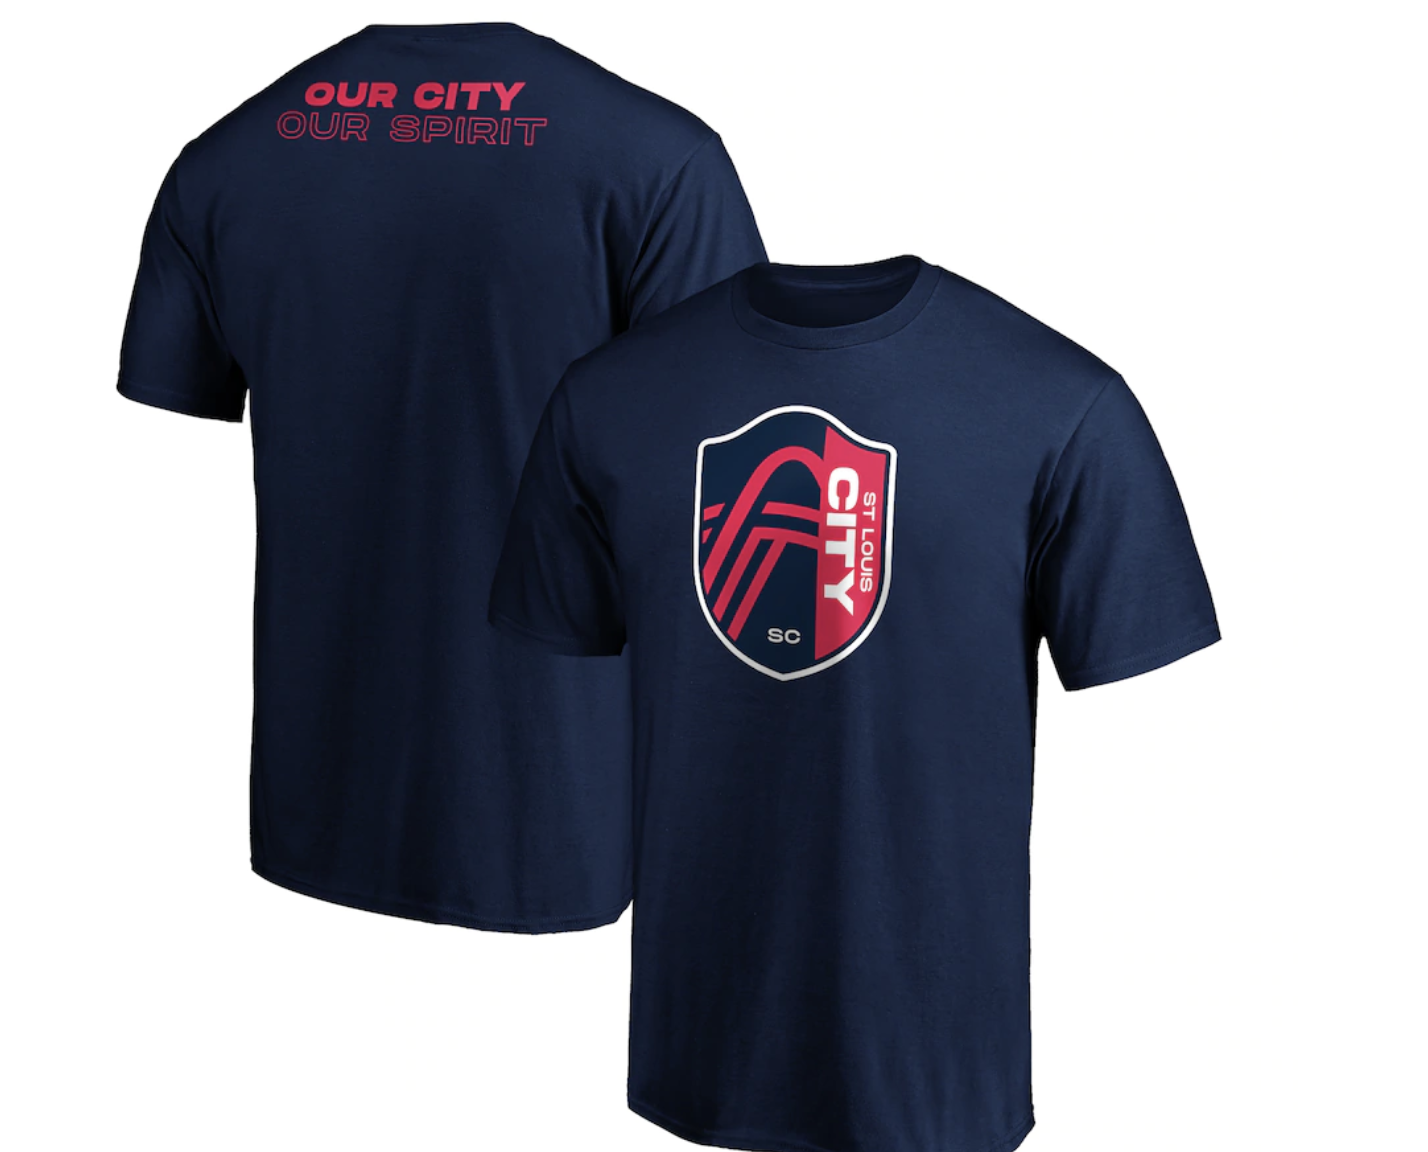 St. Louis City FC shirts